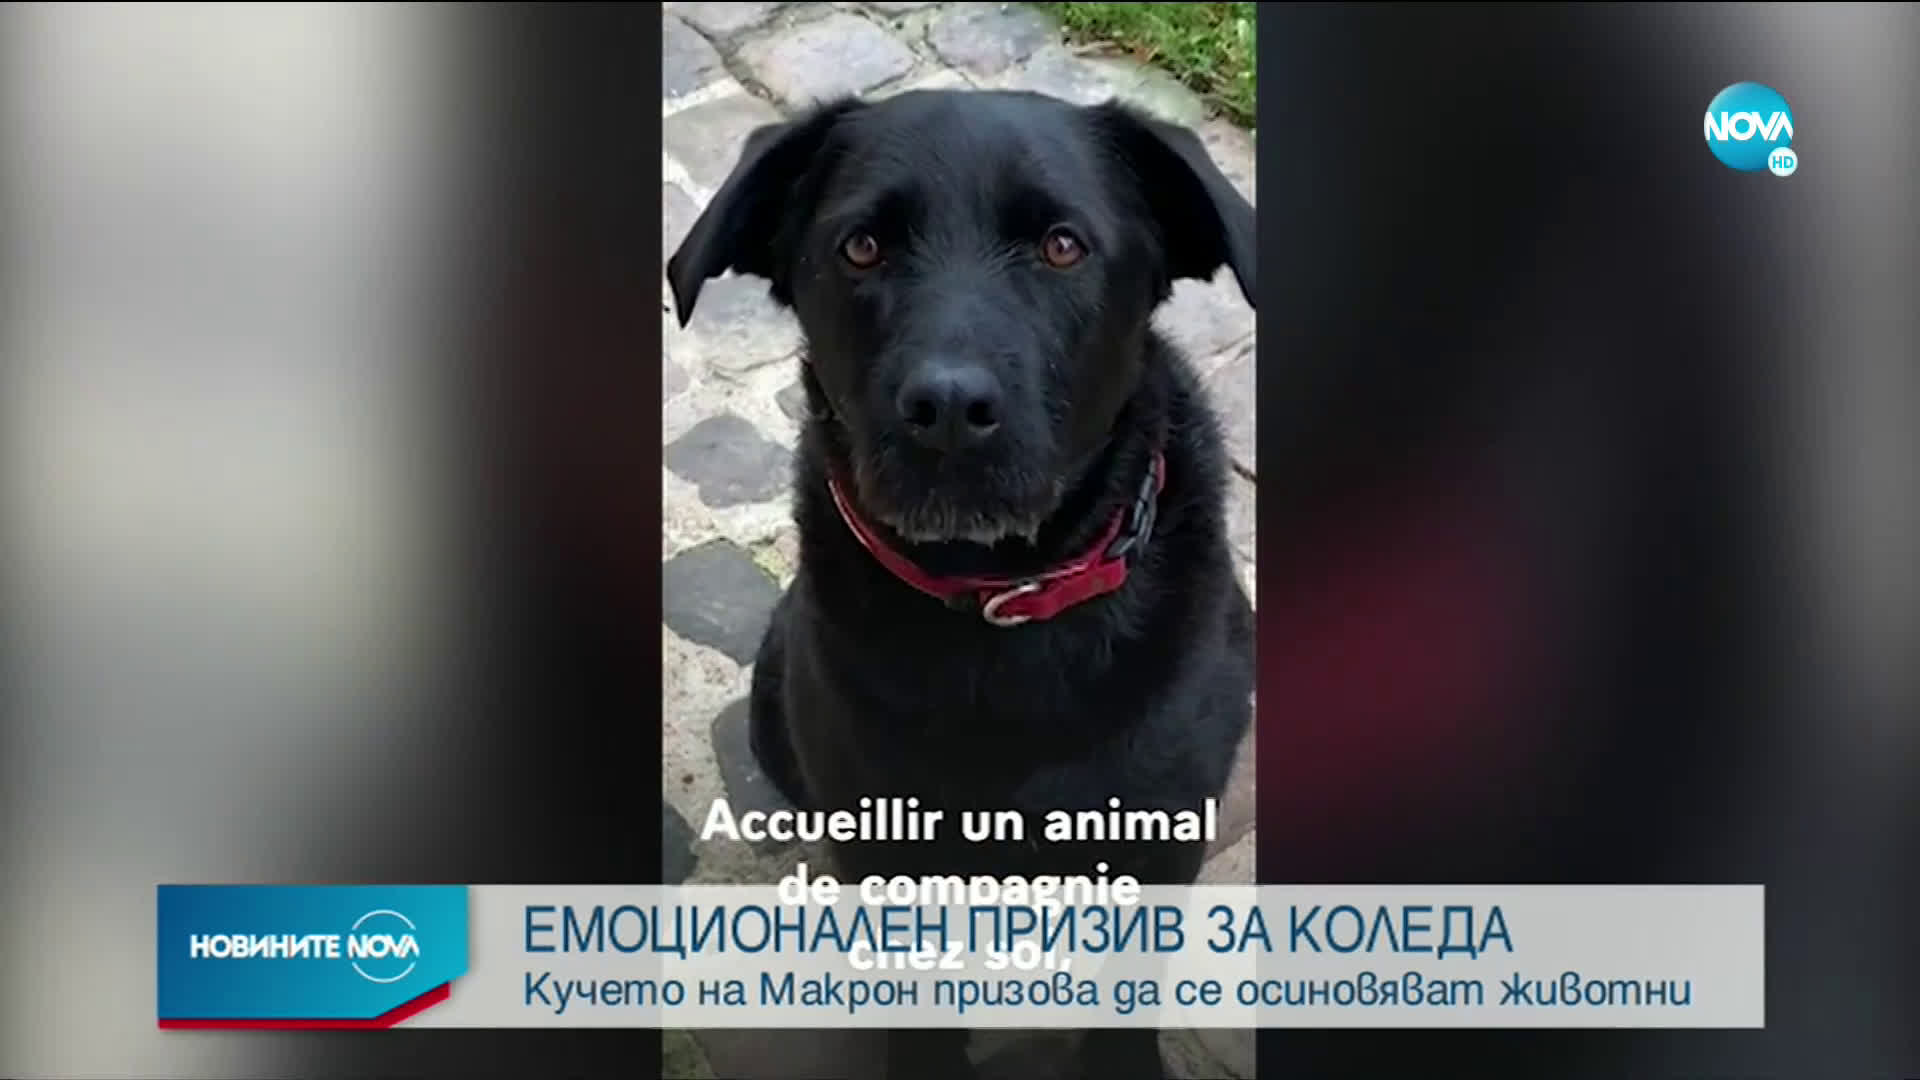 ЕМОЦИОНАЛЕН ПРИЗИВ ЗА КОЛЕДА: Кучето на Макрон призова да се осиновяват животни